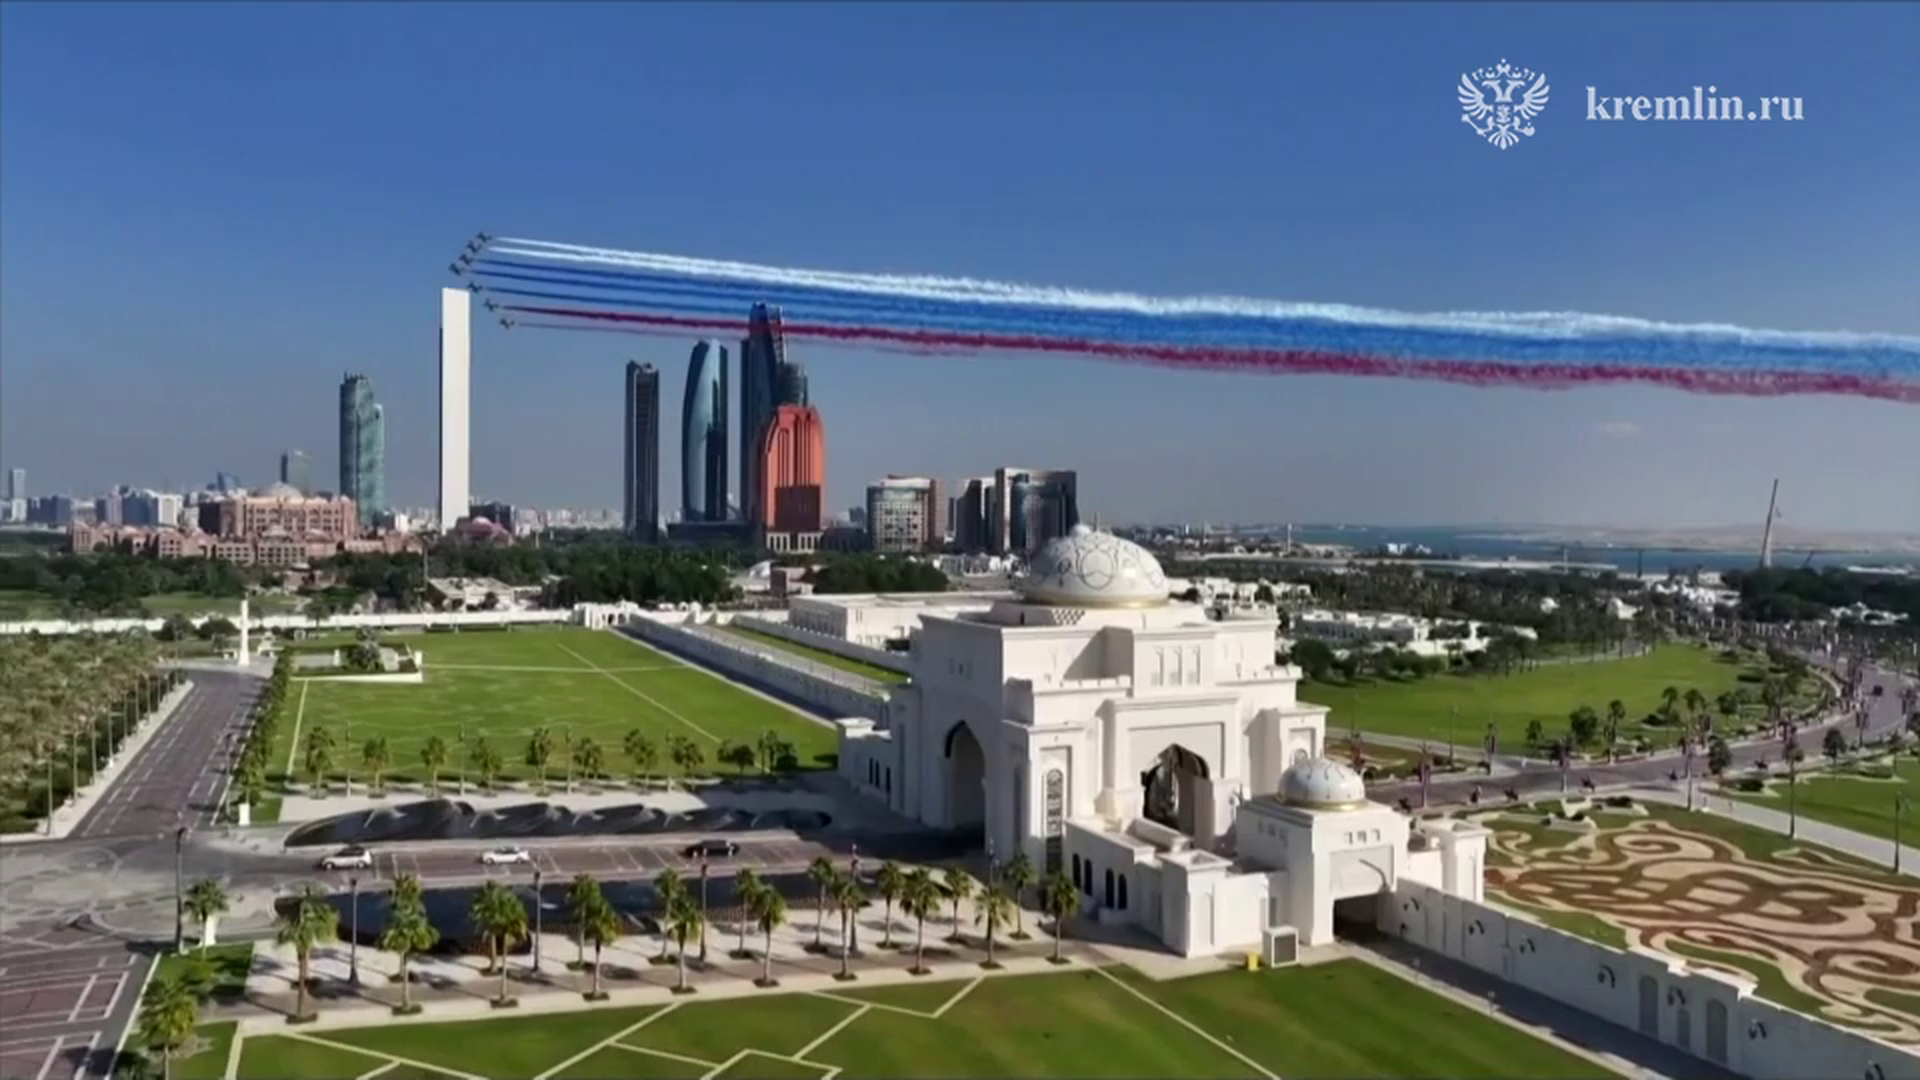 В честь прибытия Путина небо над Абу-Даби окрасилось в российский триколор